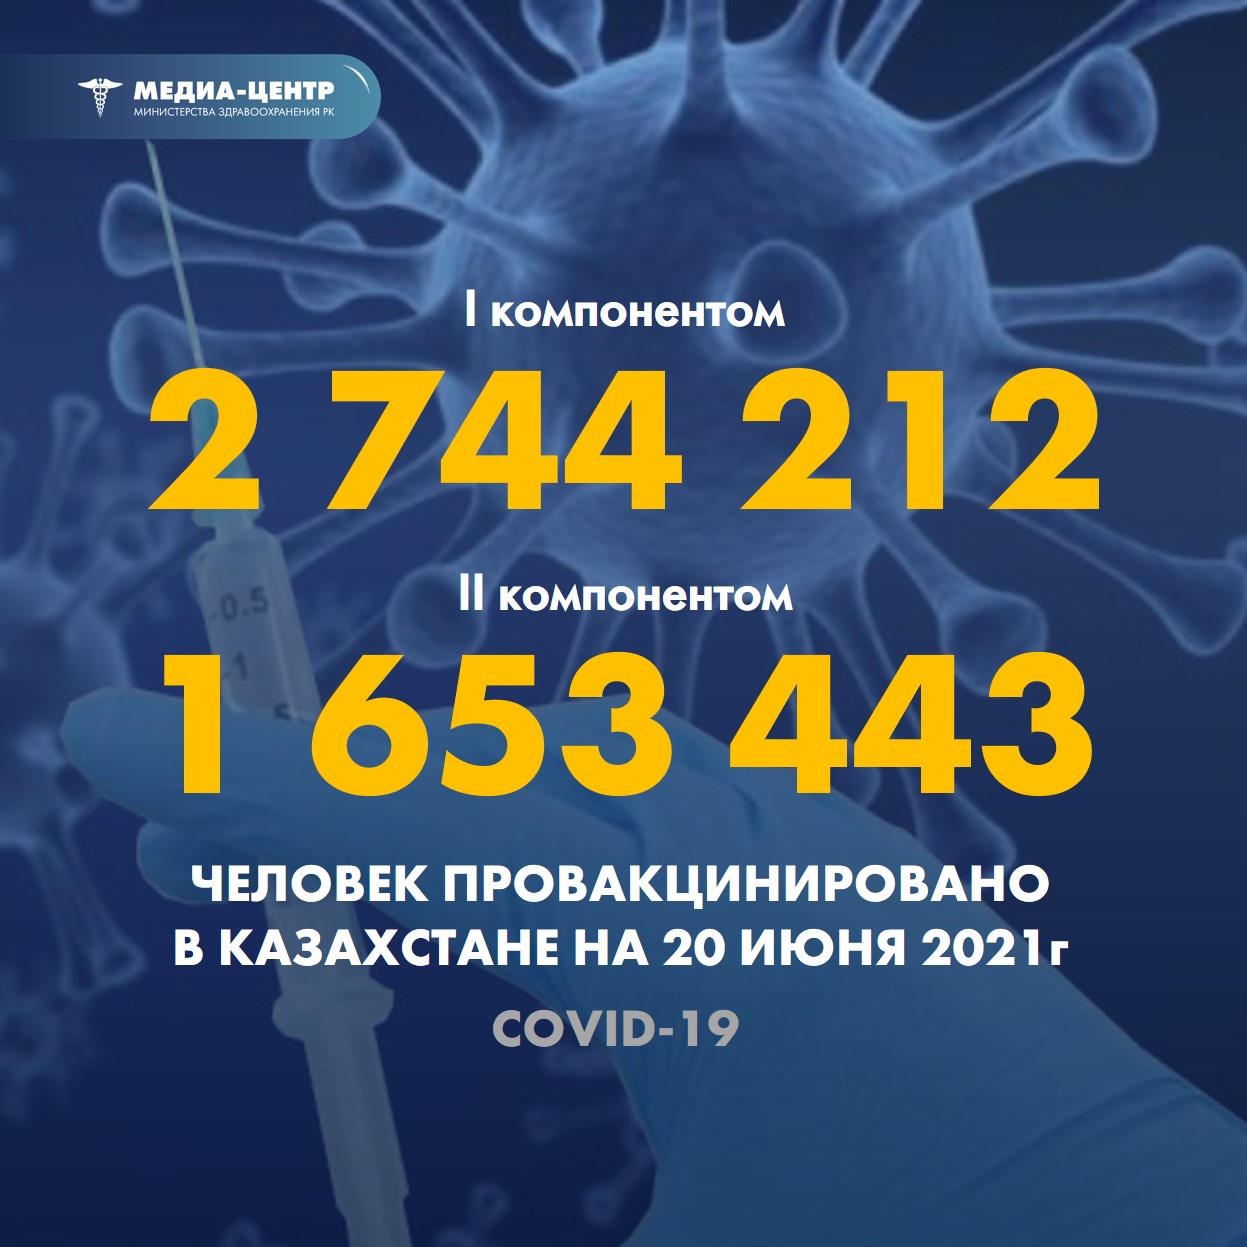 Информация о проведении вакцинации населения против КВИ на 20.06.2021 г. в разрезе регионов